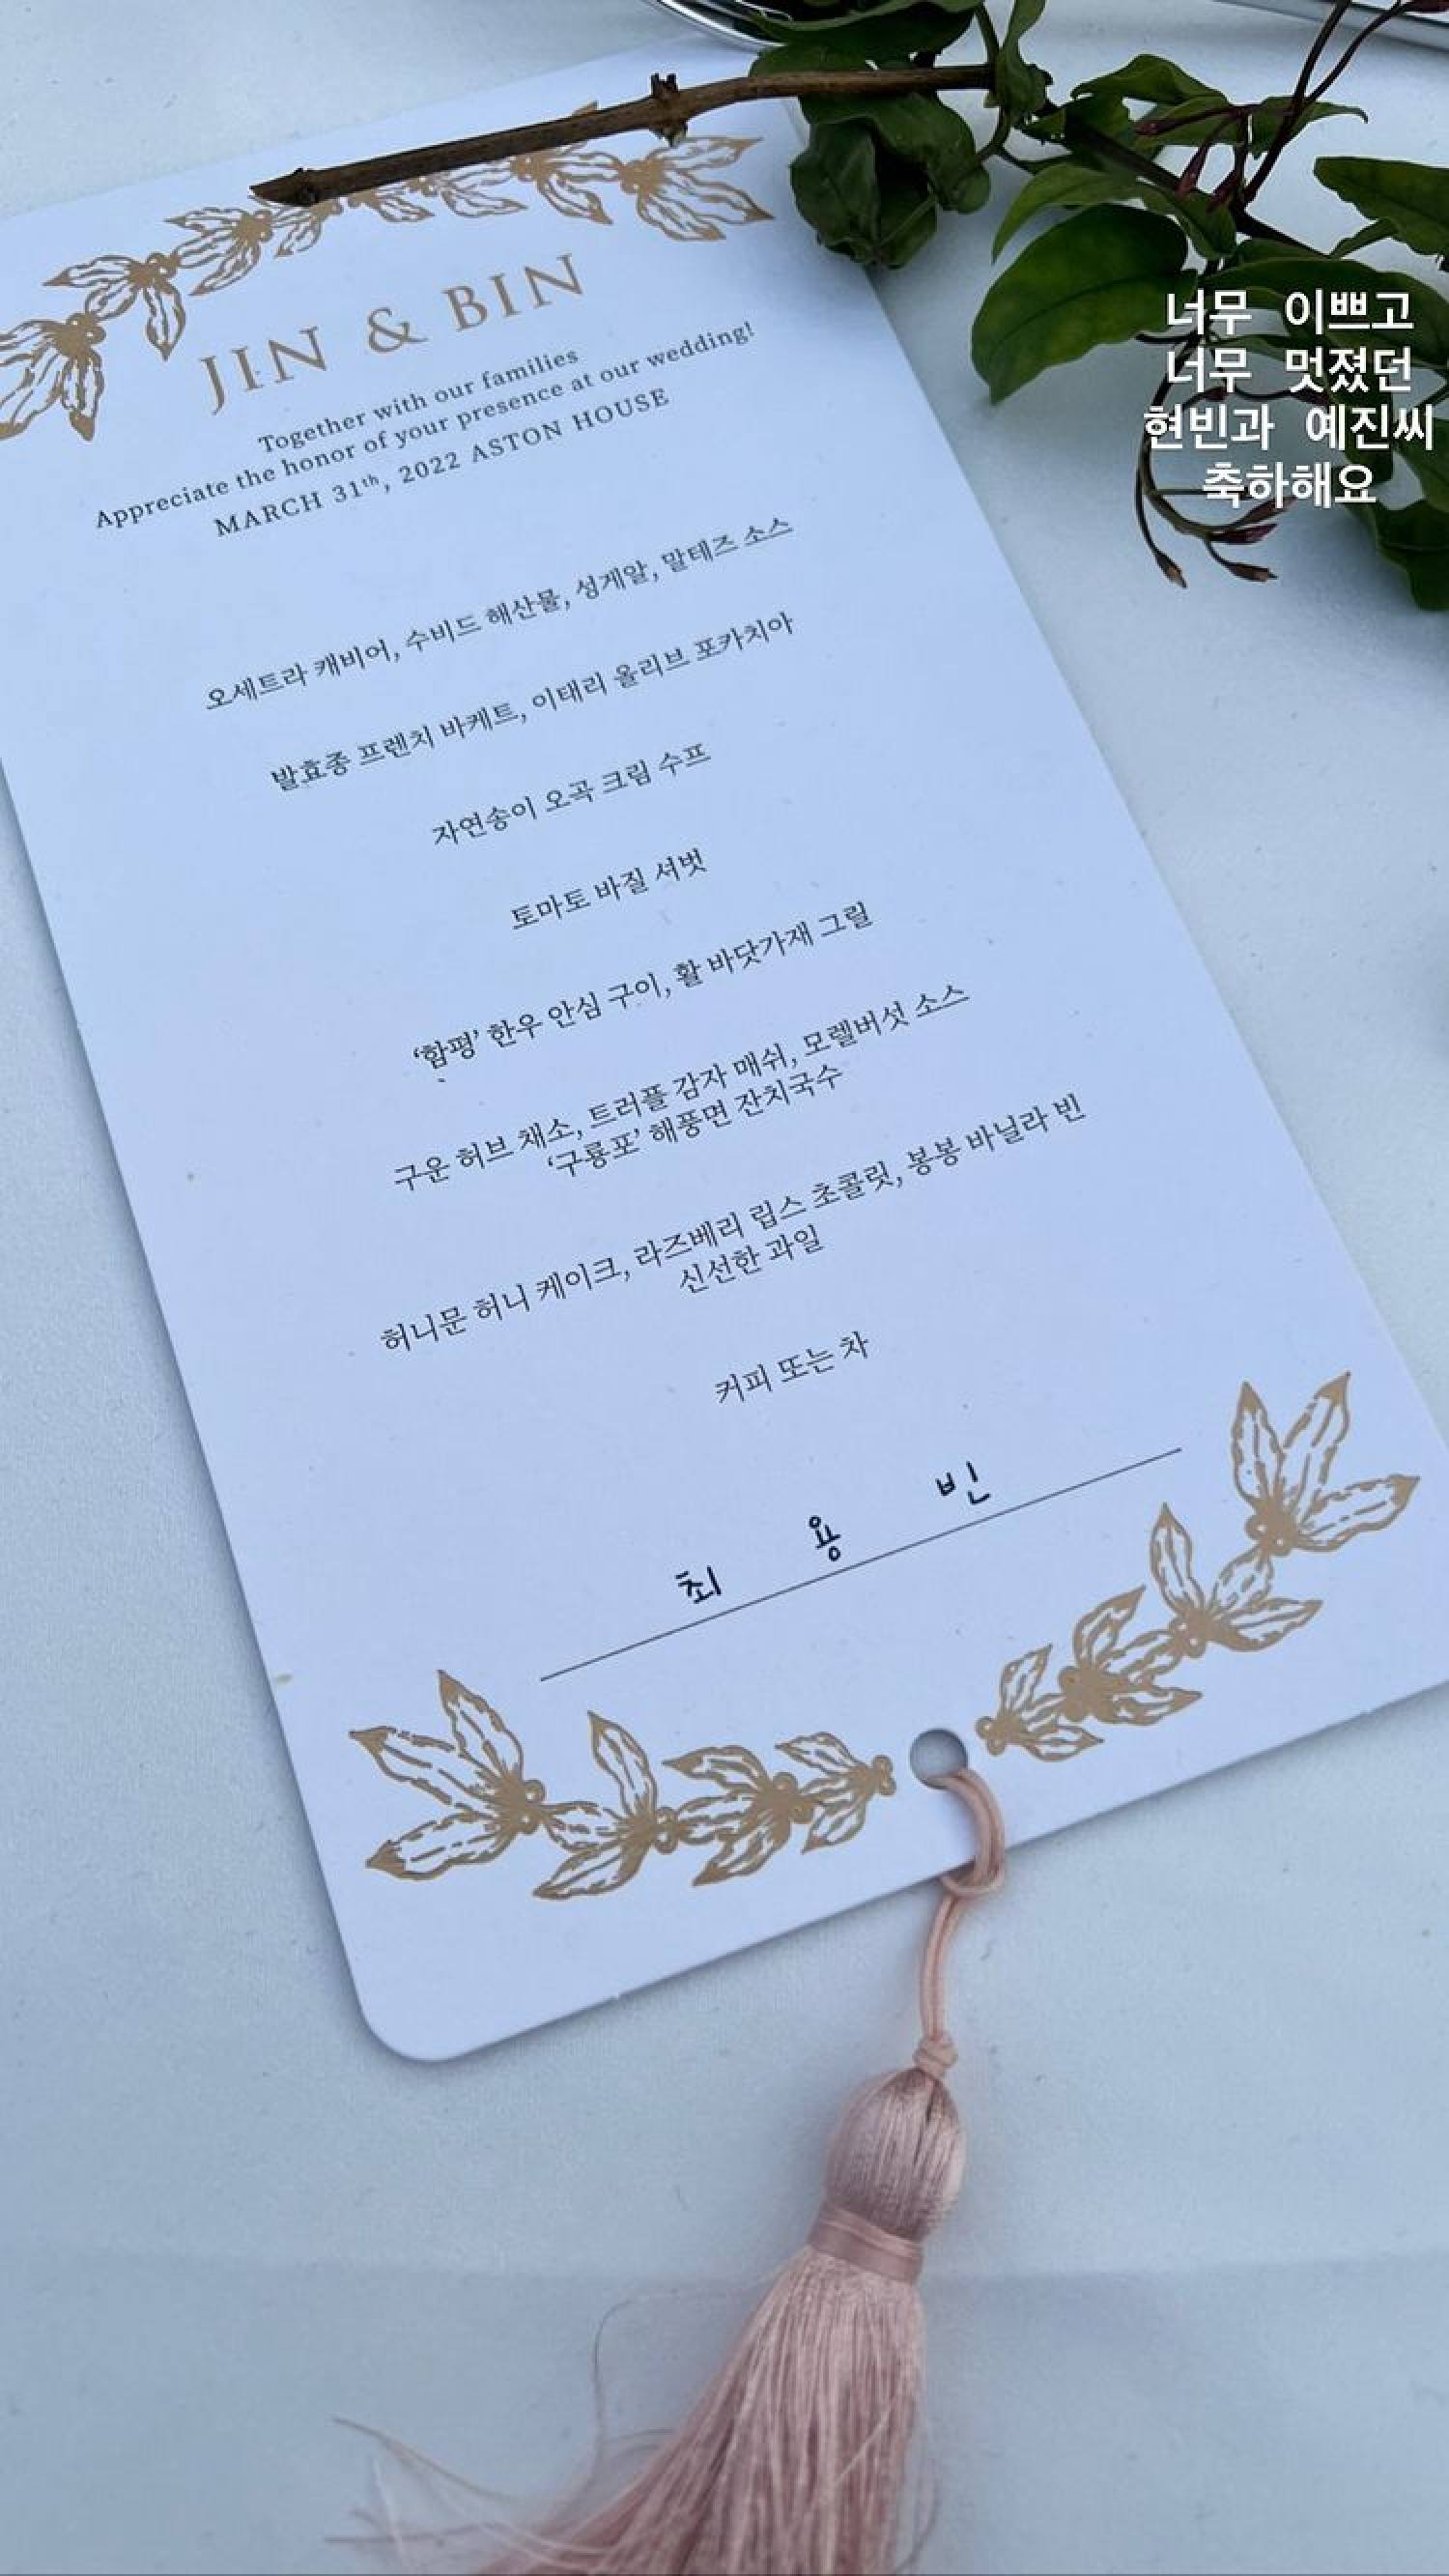 Choi Yong-bin compartilhou uma foto do menu fornecido no casamento binjin. Foto: @choiyongbin22/Instagram